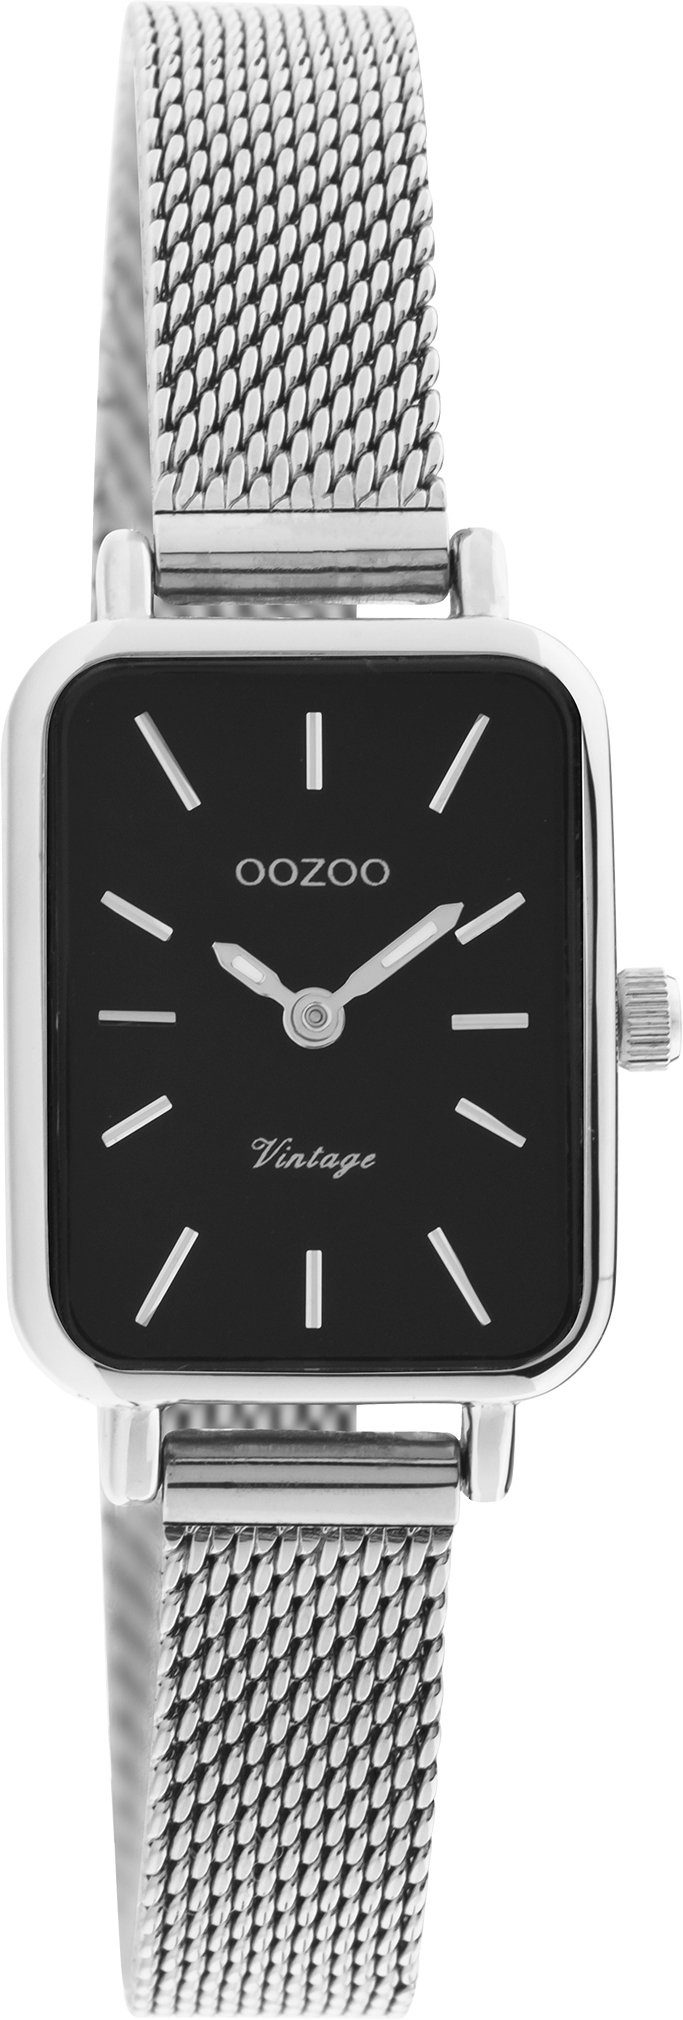 OOZOO Quarzuhr C20267, Armbanduhr, Damenuhr